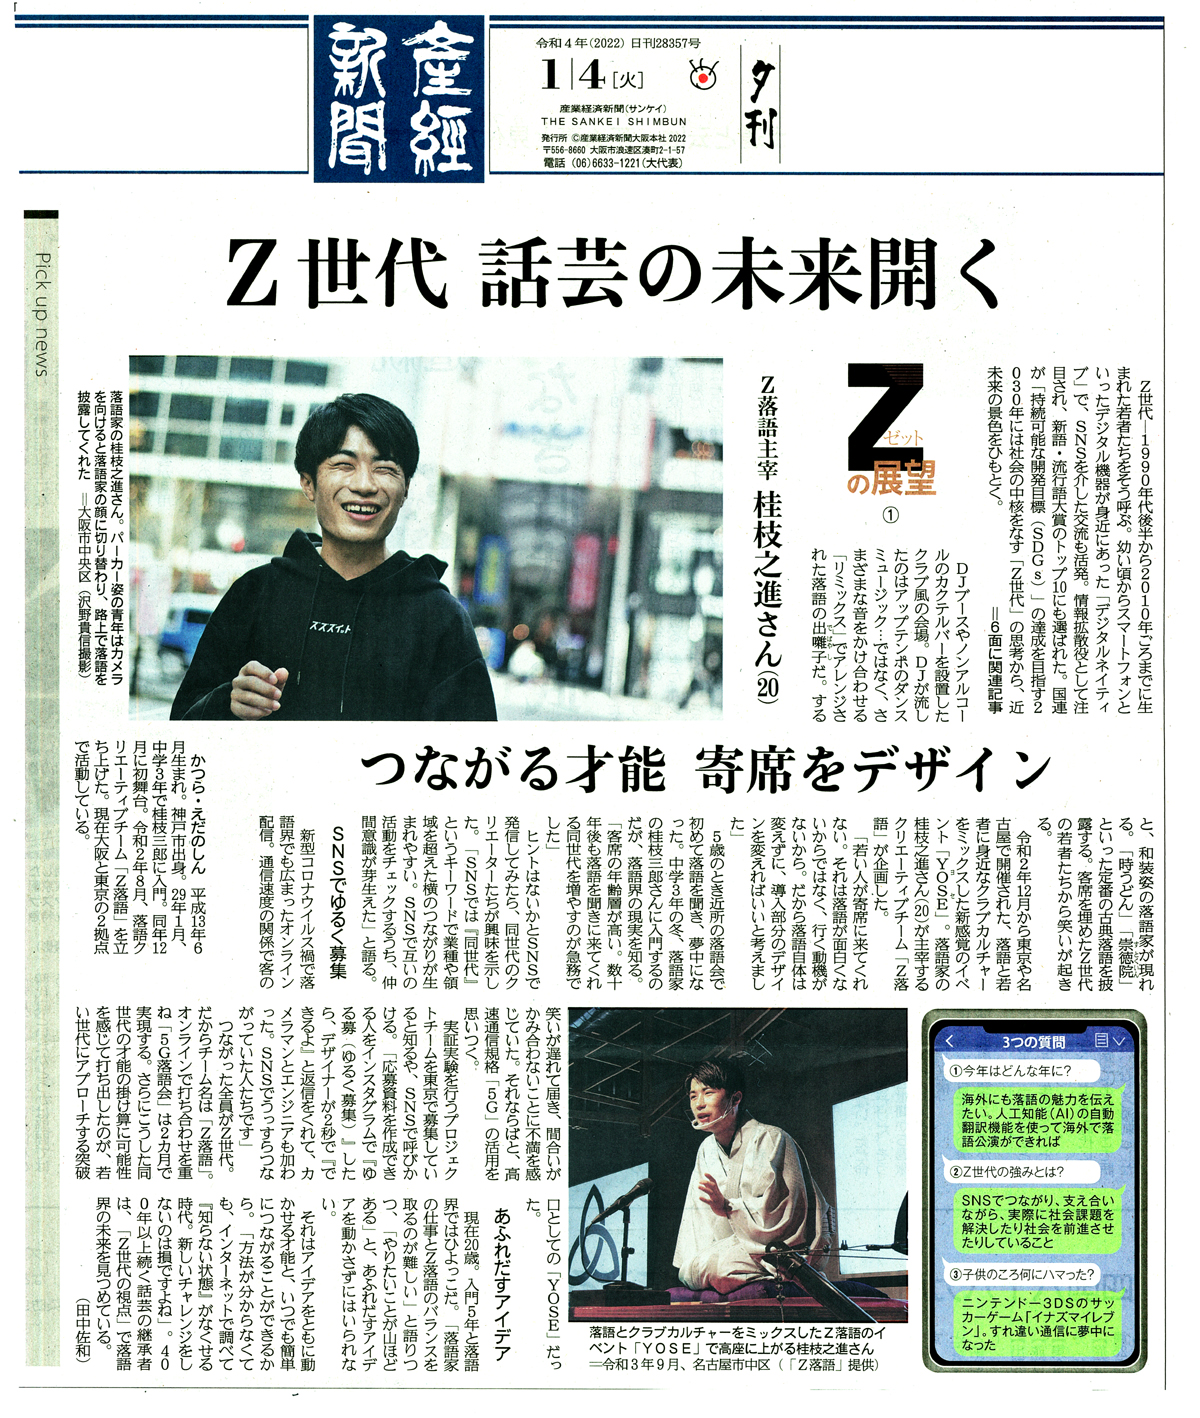 『産経新聞』(2022年1月4日付)。